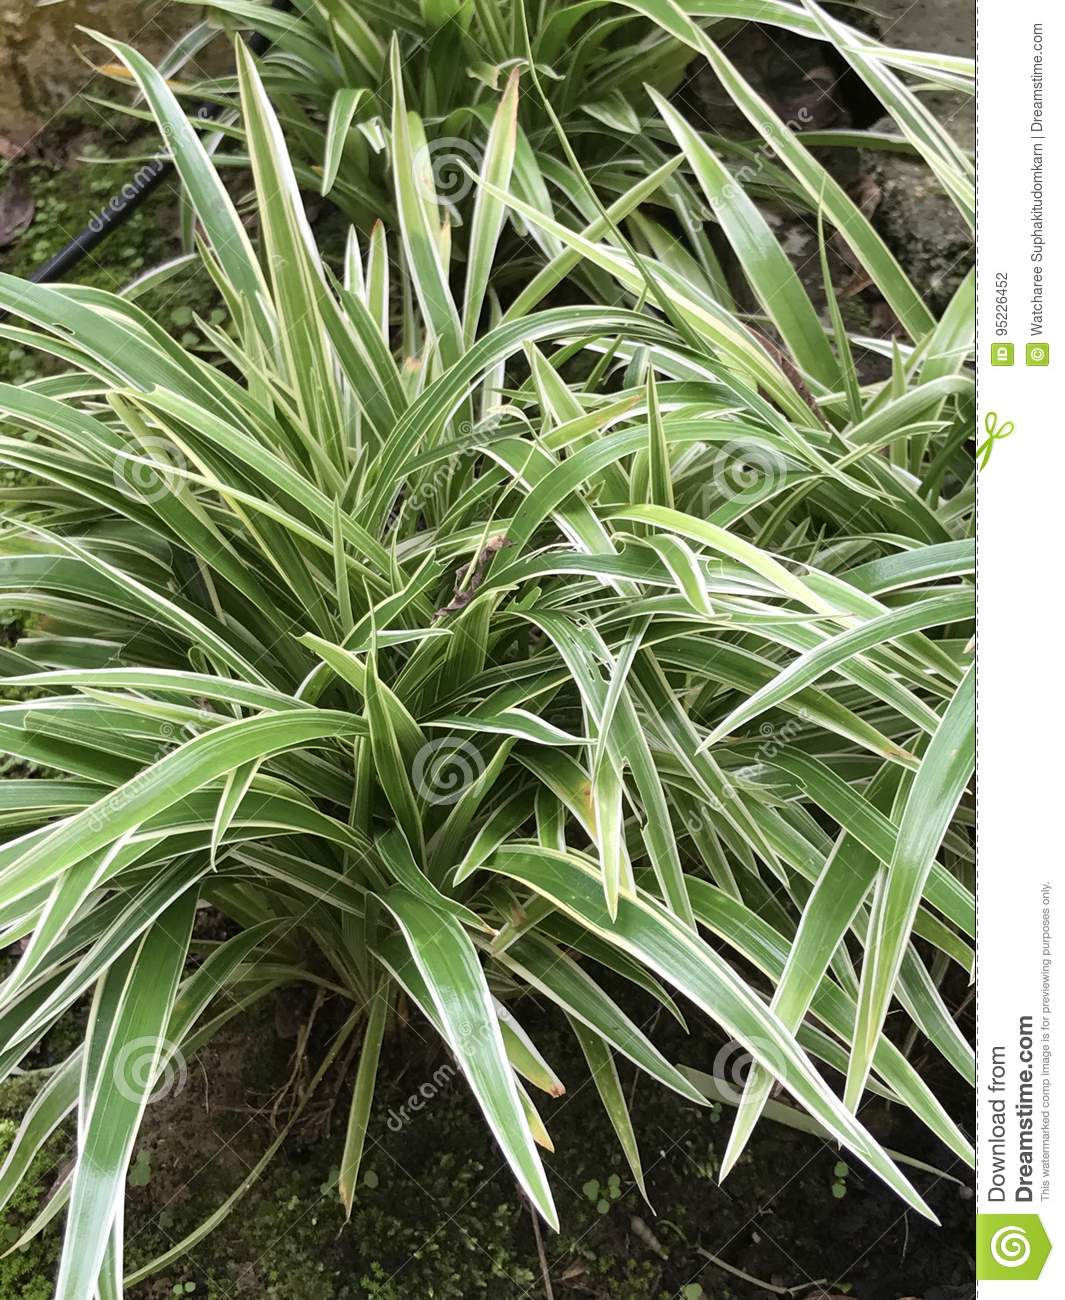 planta-de-la-arana-chlorophytum-comosum